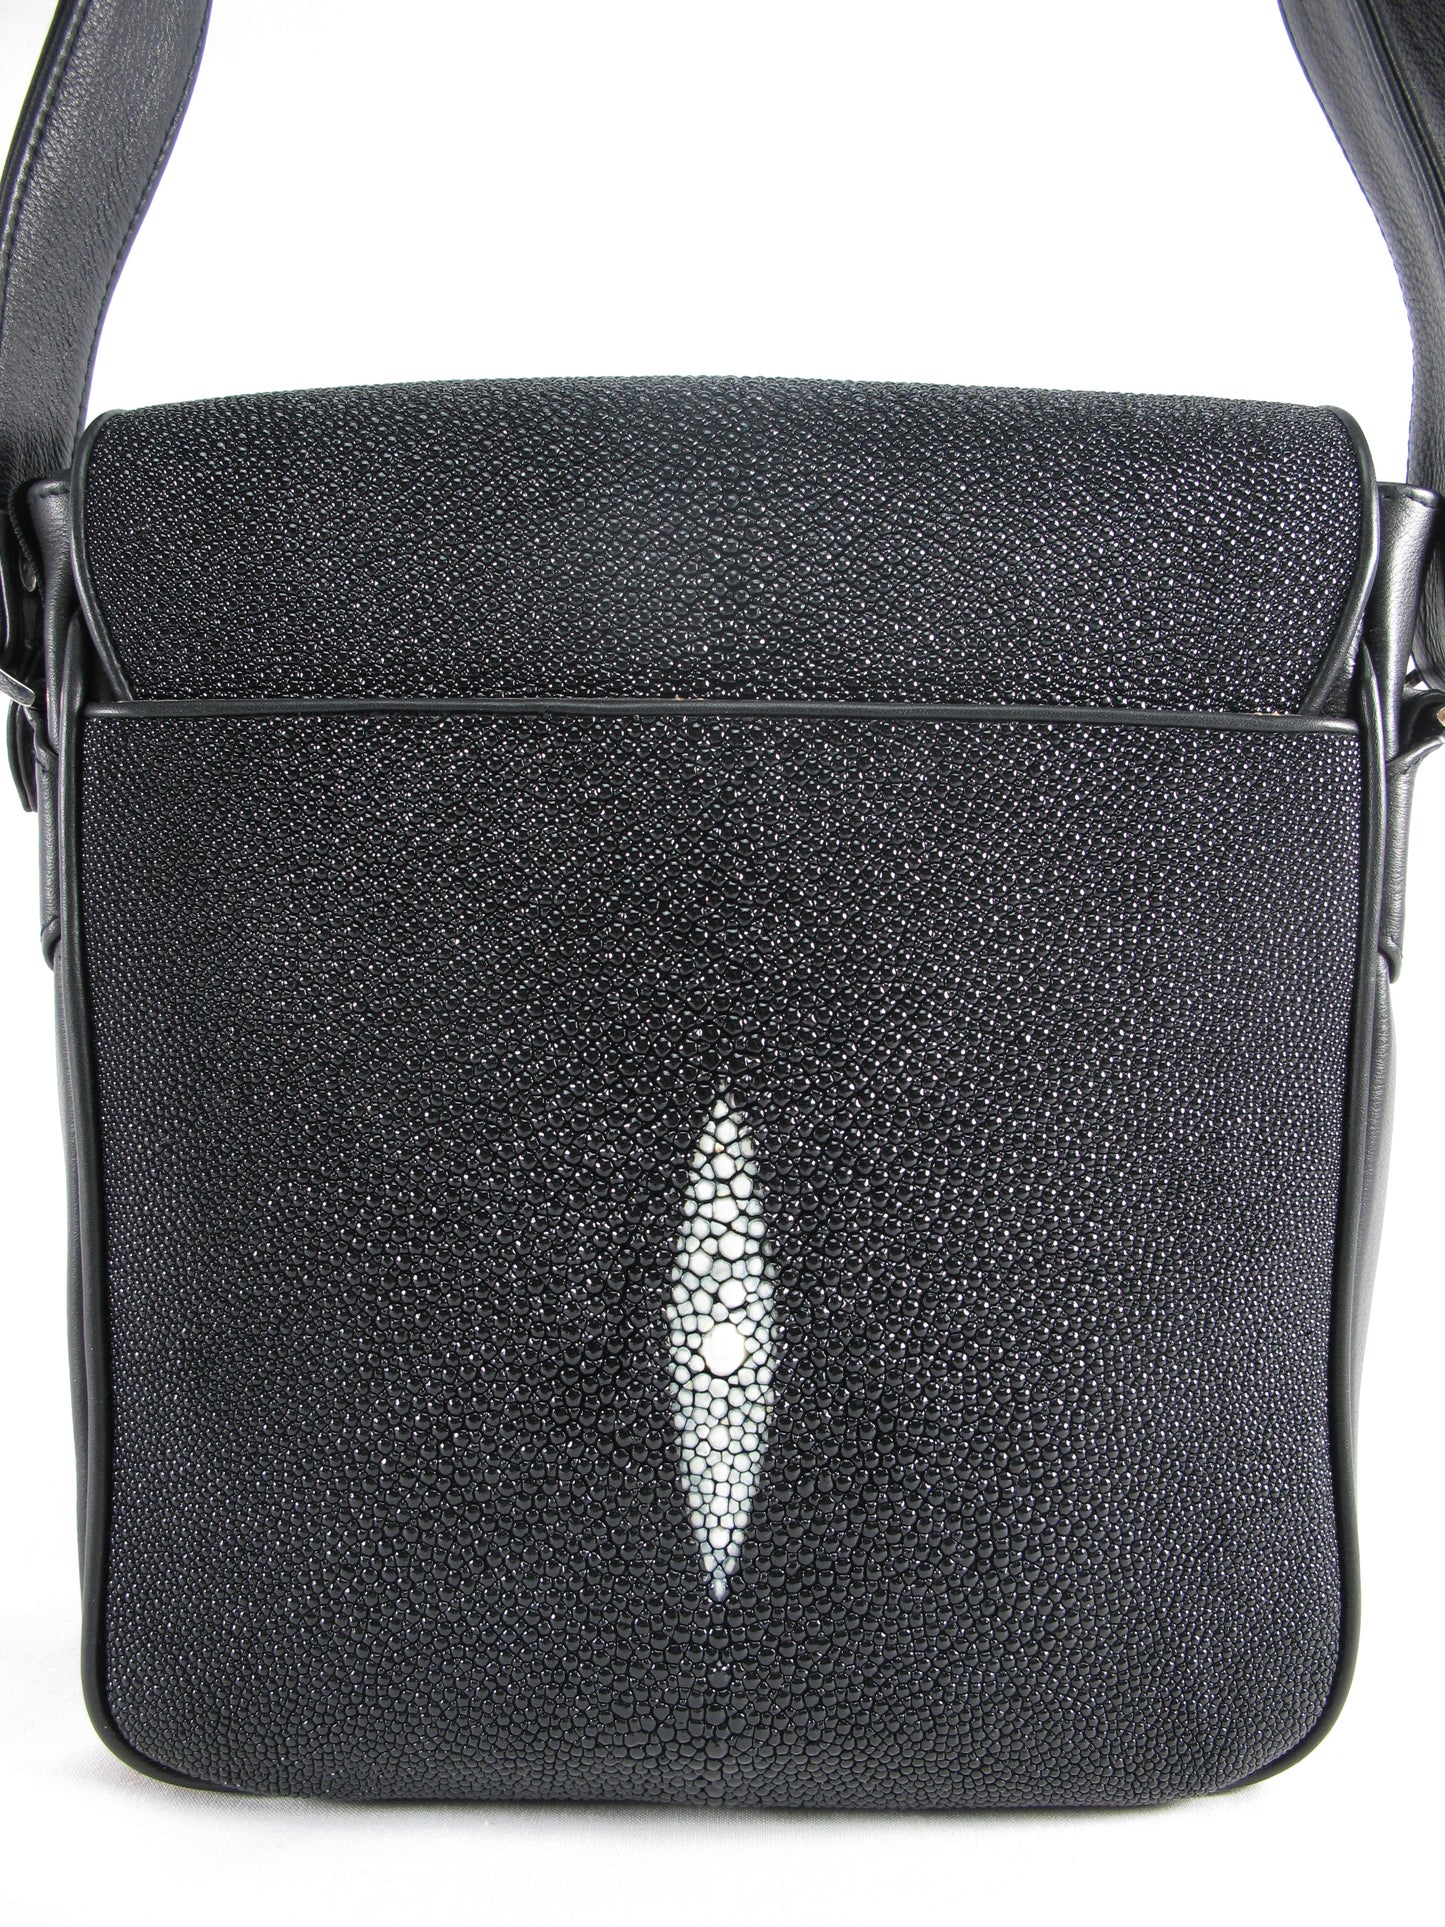 Genuine Stingray Skin Leather Men's Crossbody Messenger Bag